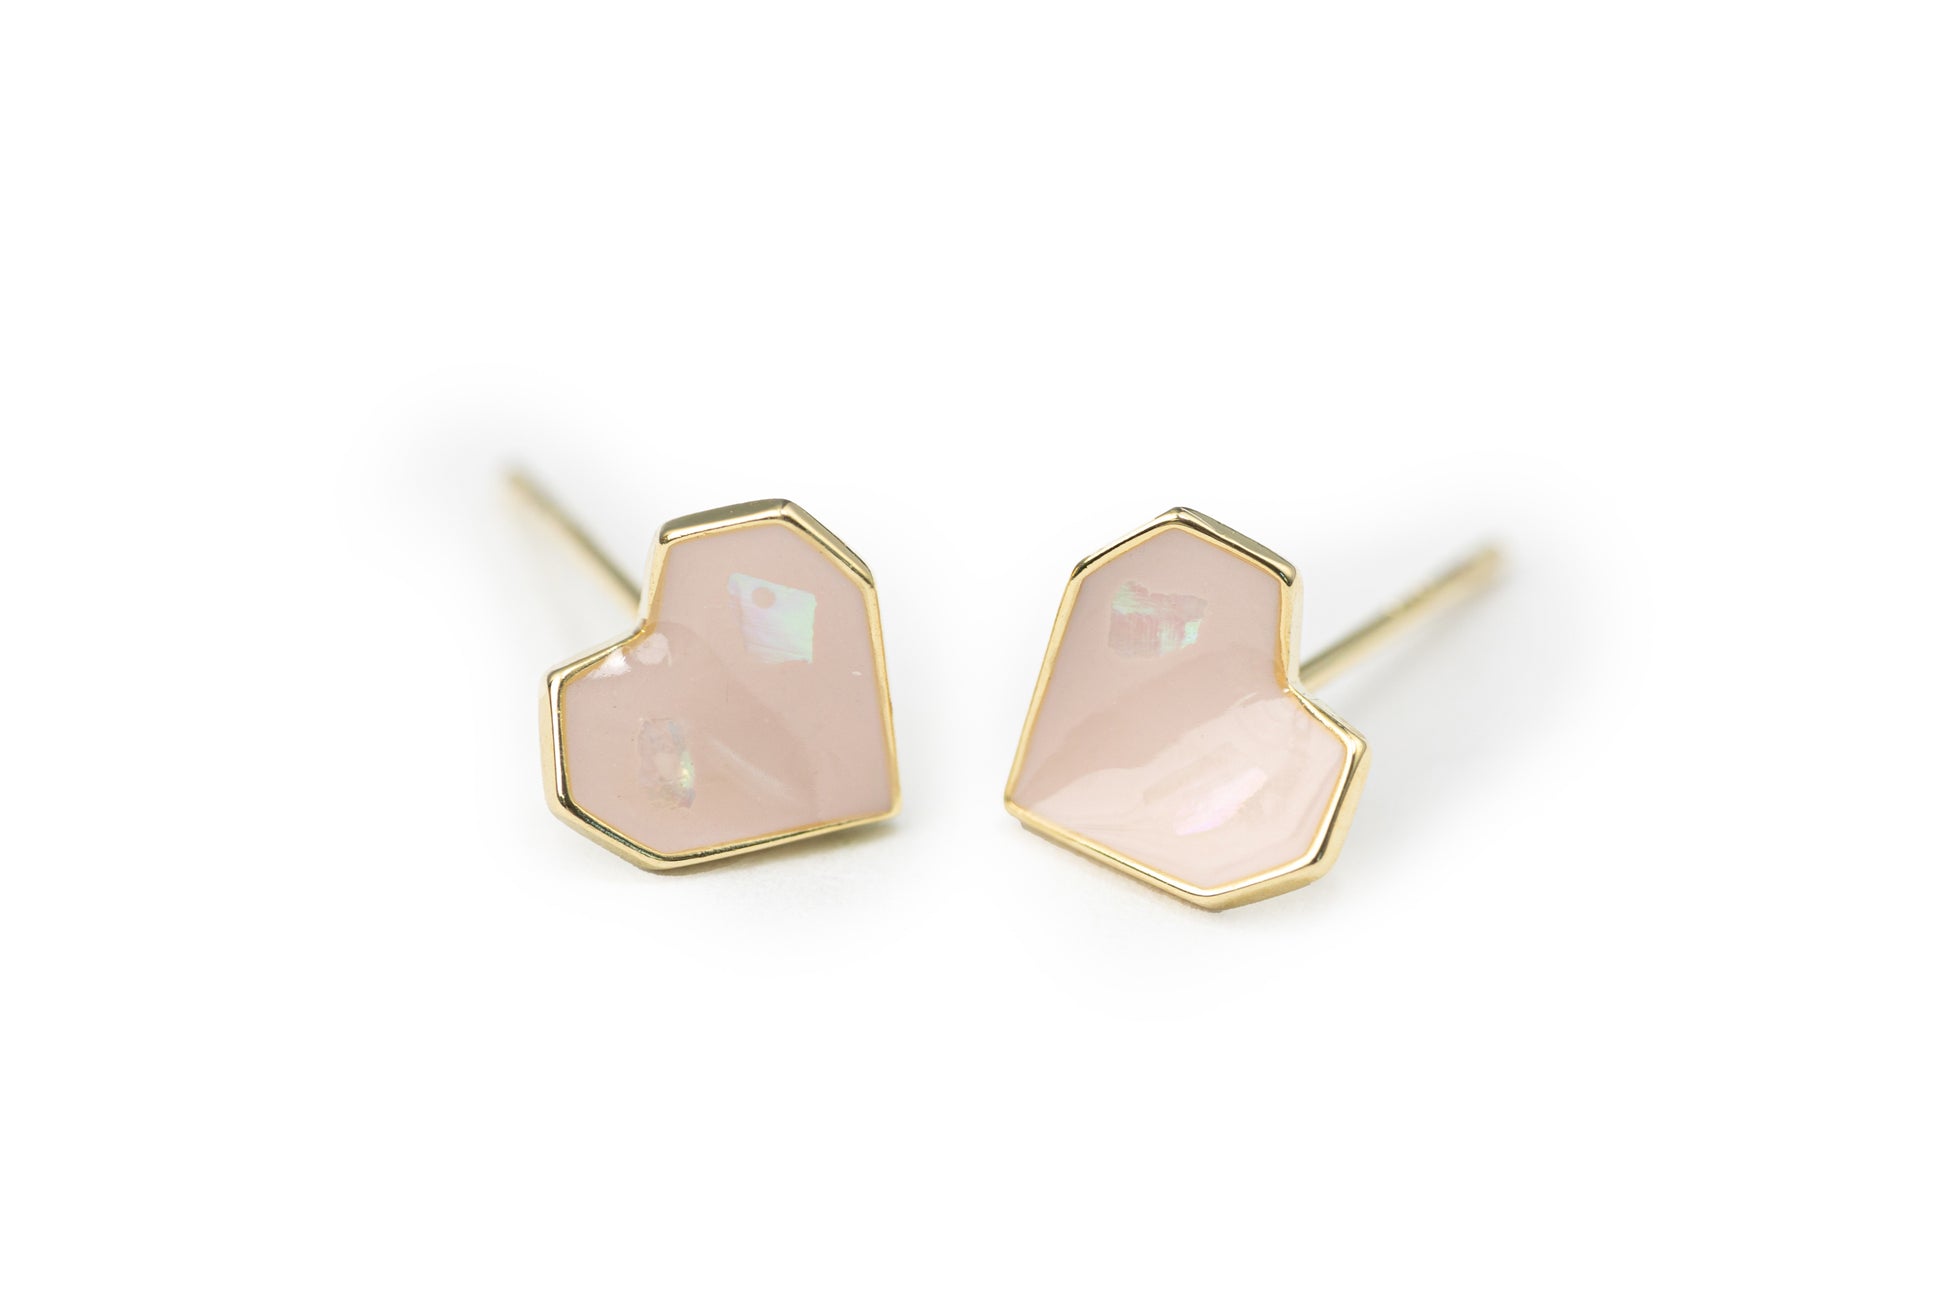 Lovely Heart Studs Pack - Golden Studs for Women-Nap Earrings